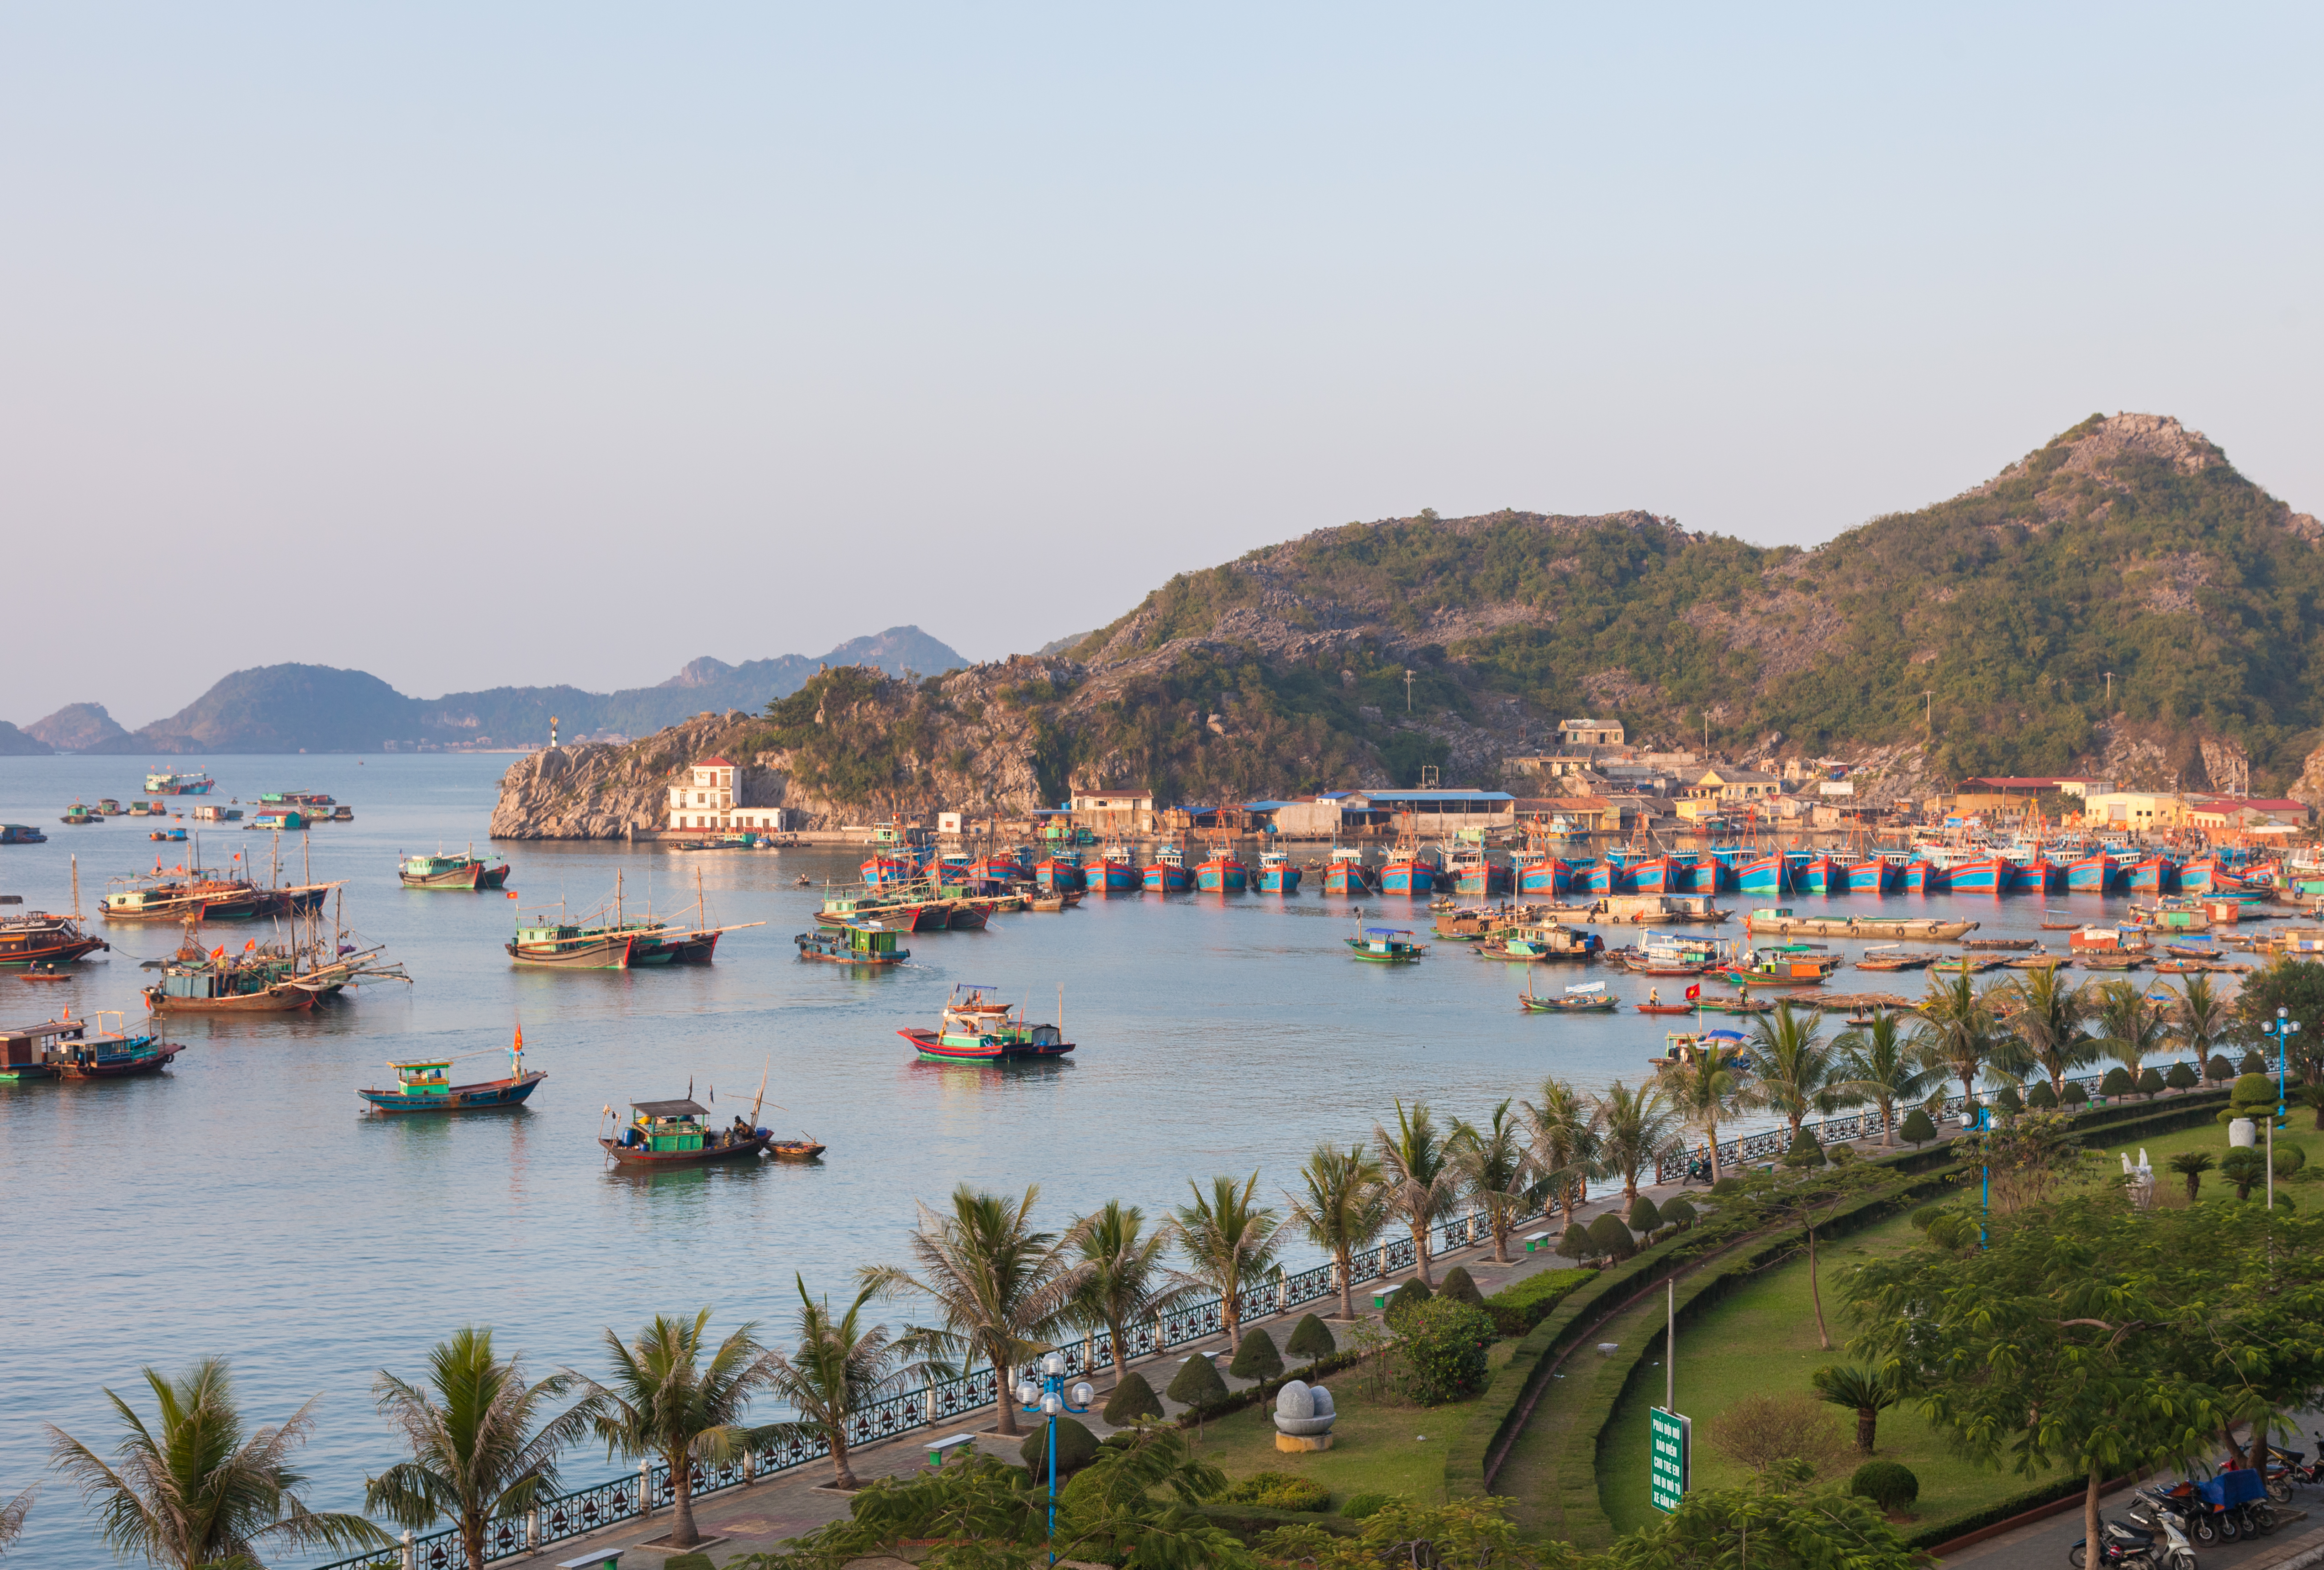 A view of Cat Ba Island in Ha Long Bay